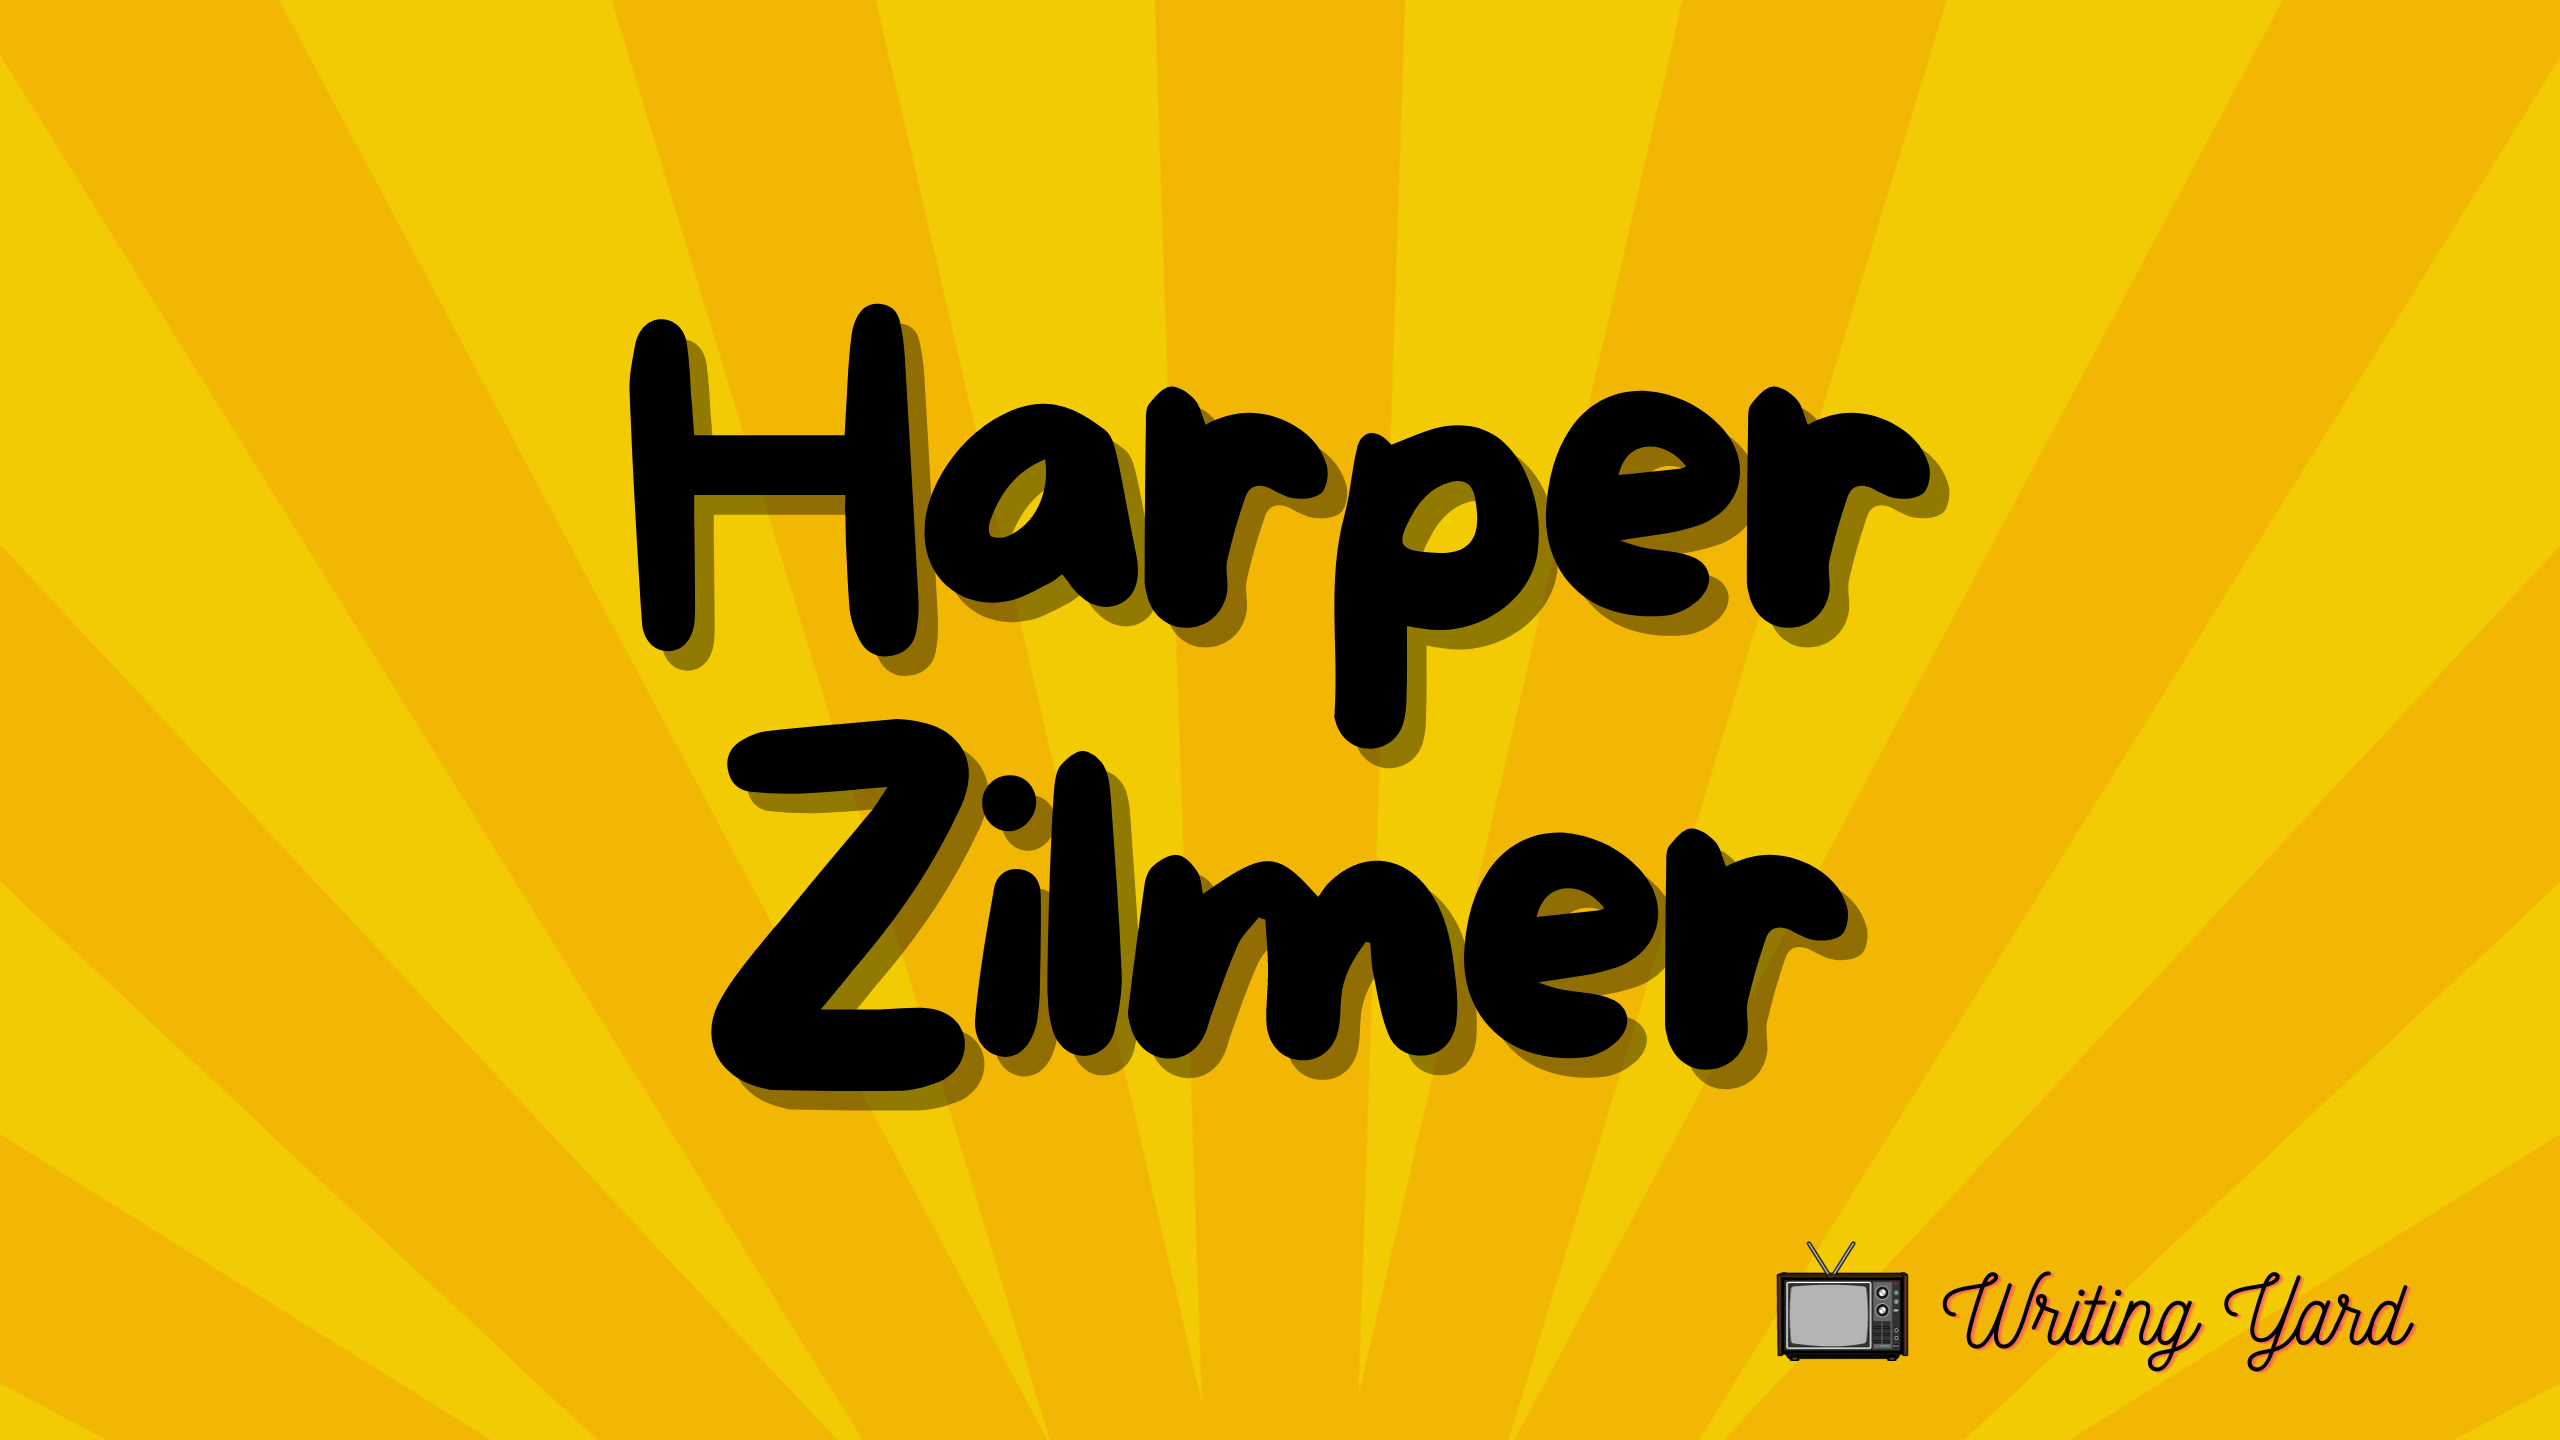 Harper Zilmer